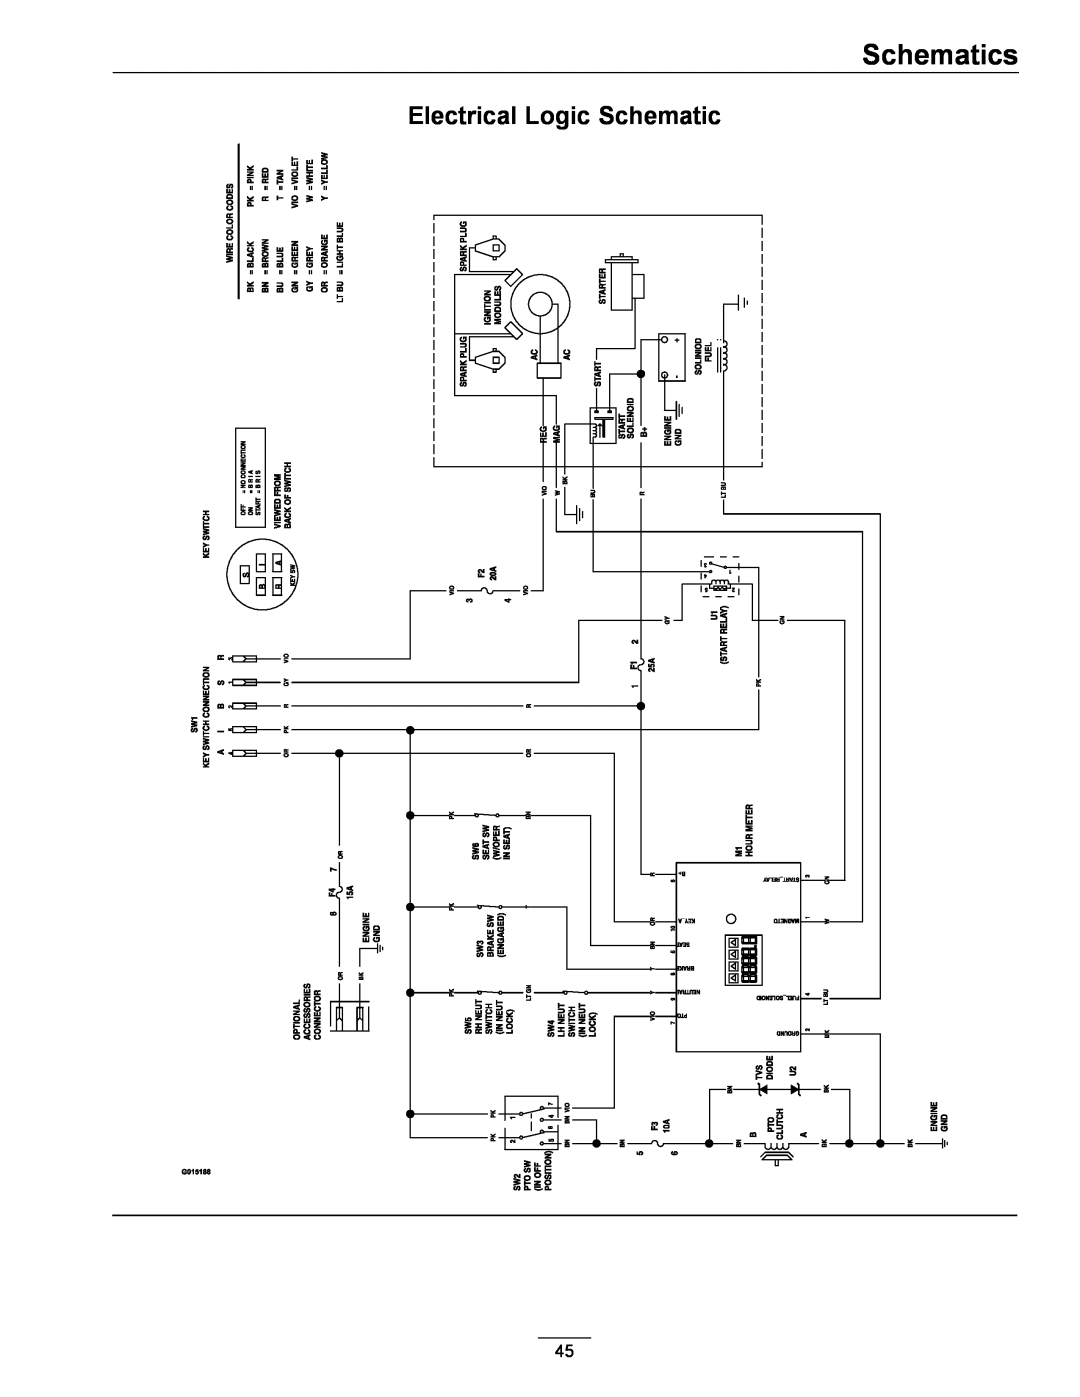 Exmark 4500-996 Rev A manual Electrical Logic Schematic, Schematics 